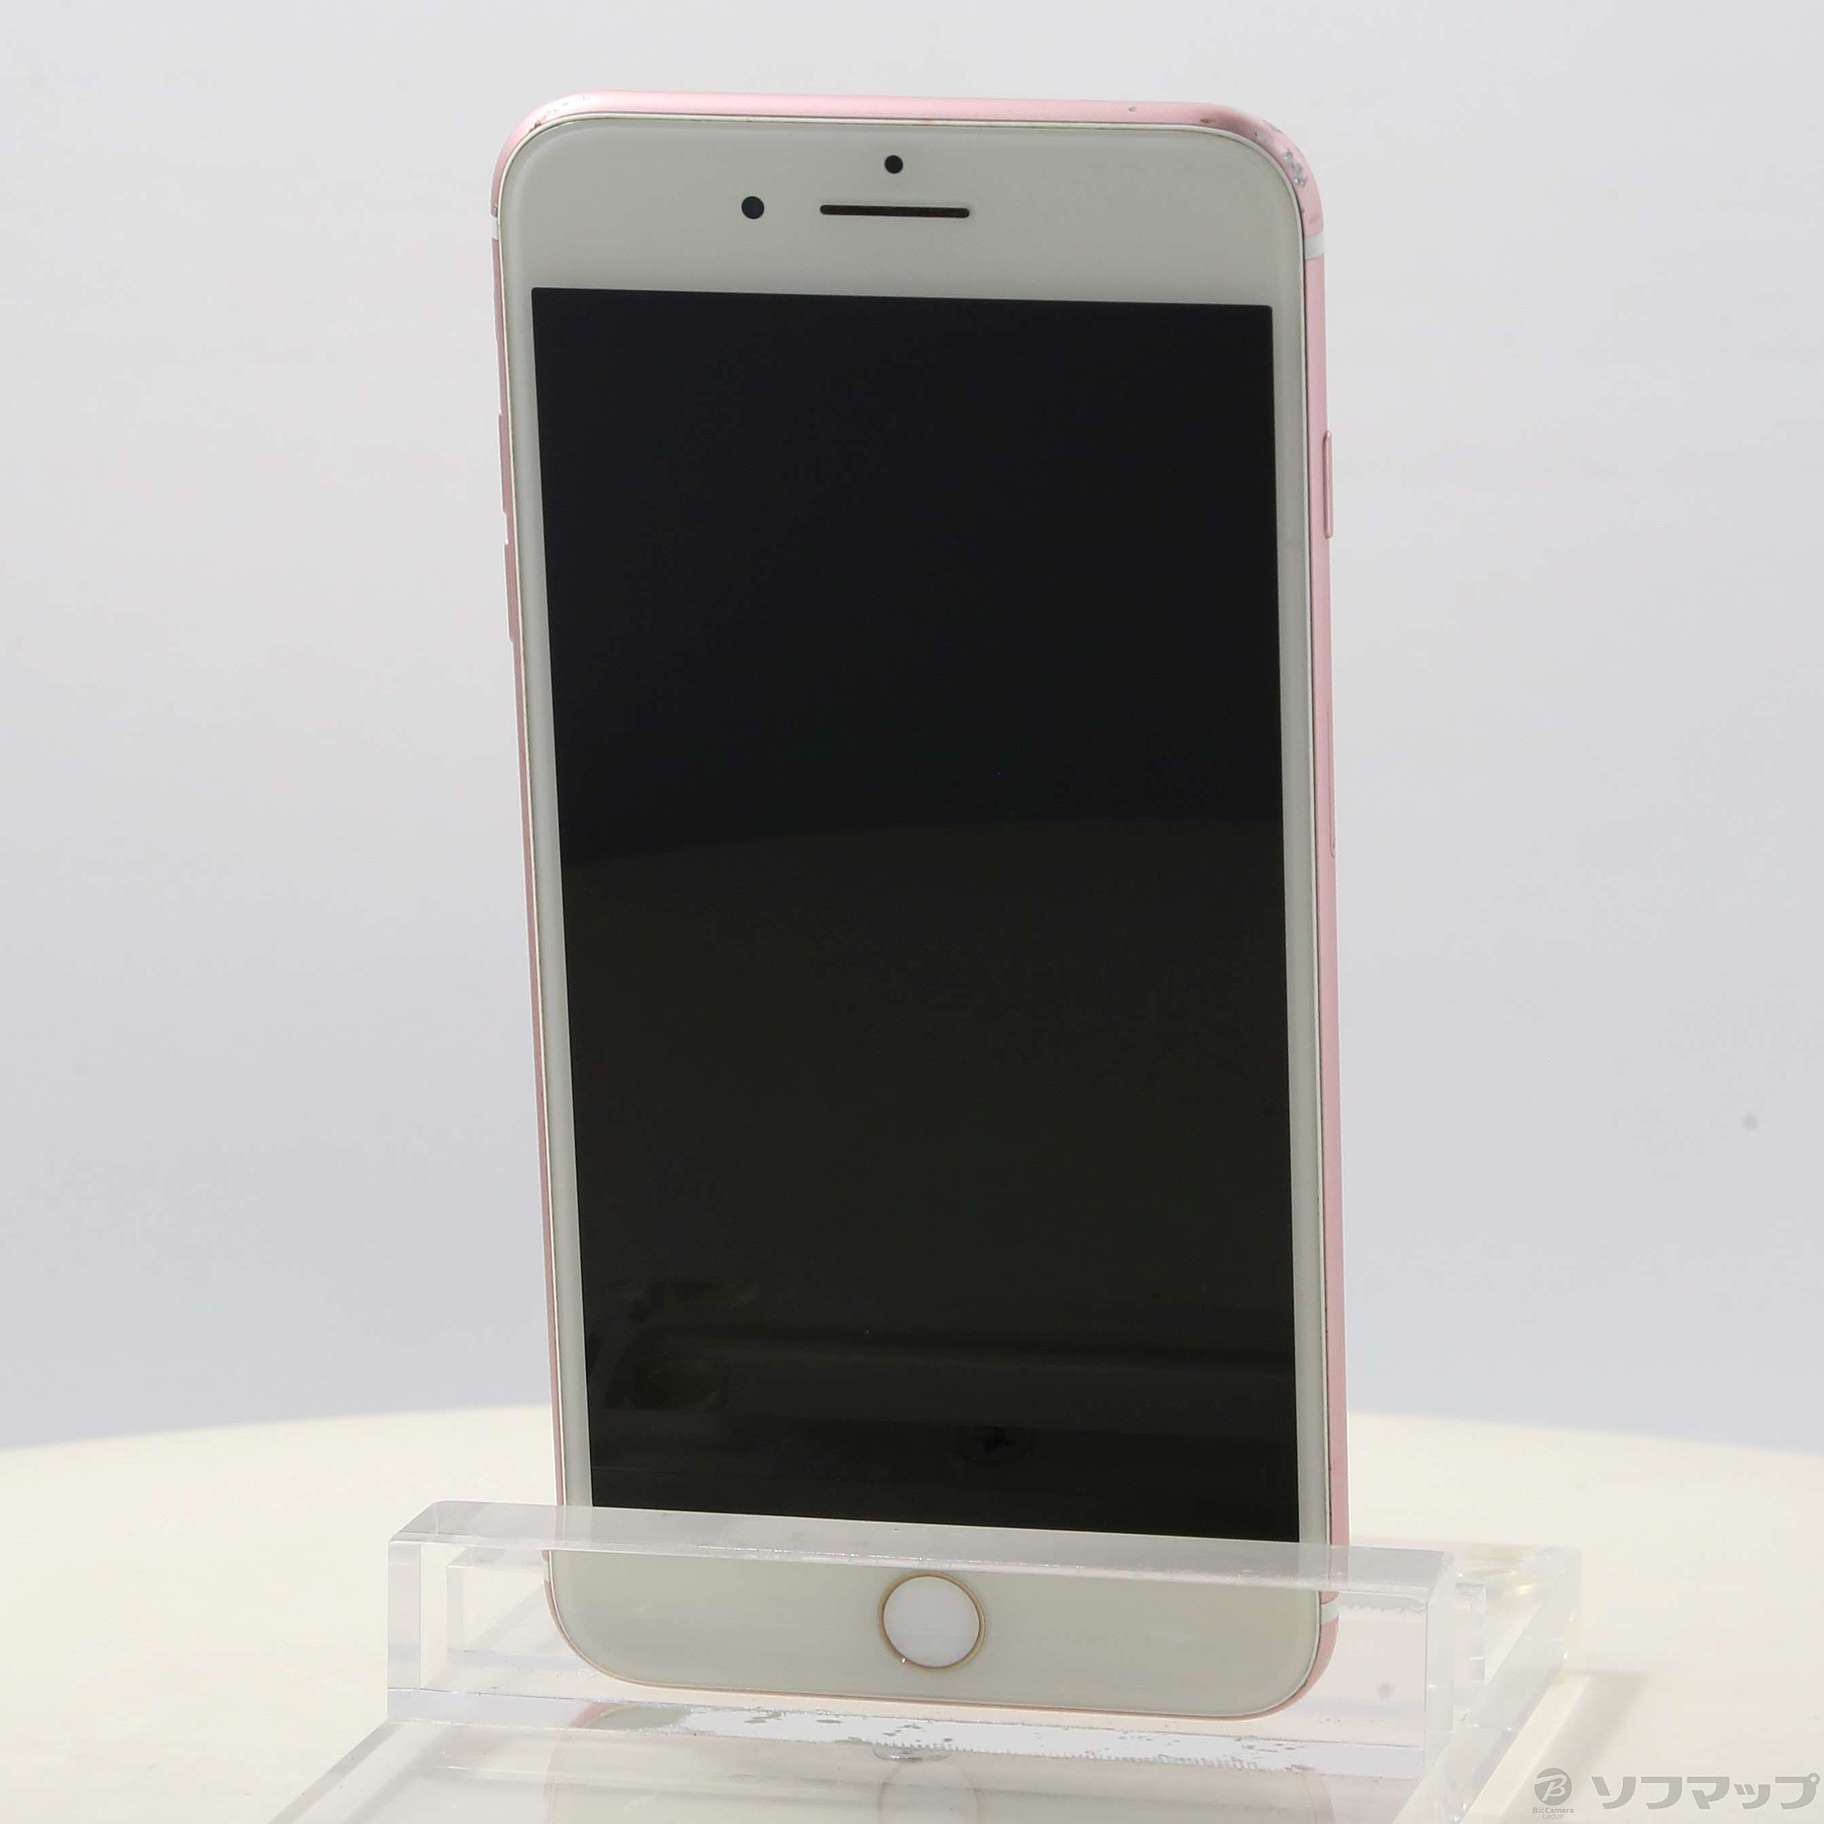 大人気即納SoftBank Apple MN6J2J/A iPhone 7 Plus 128GB RG ピンク スマートフォン スマホ iPhone